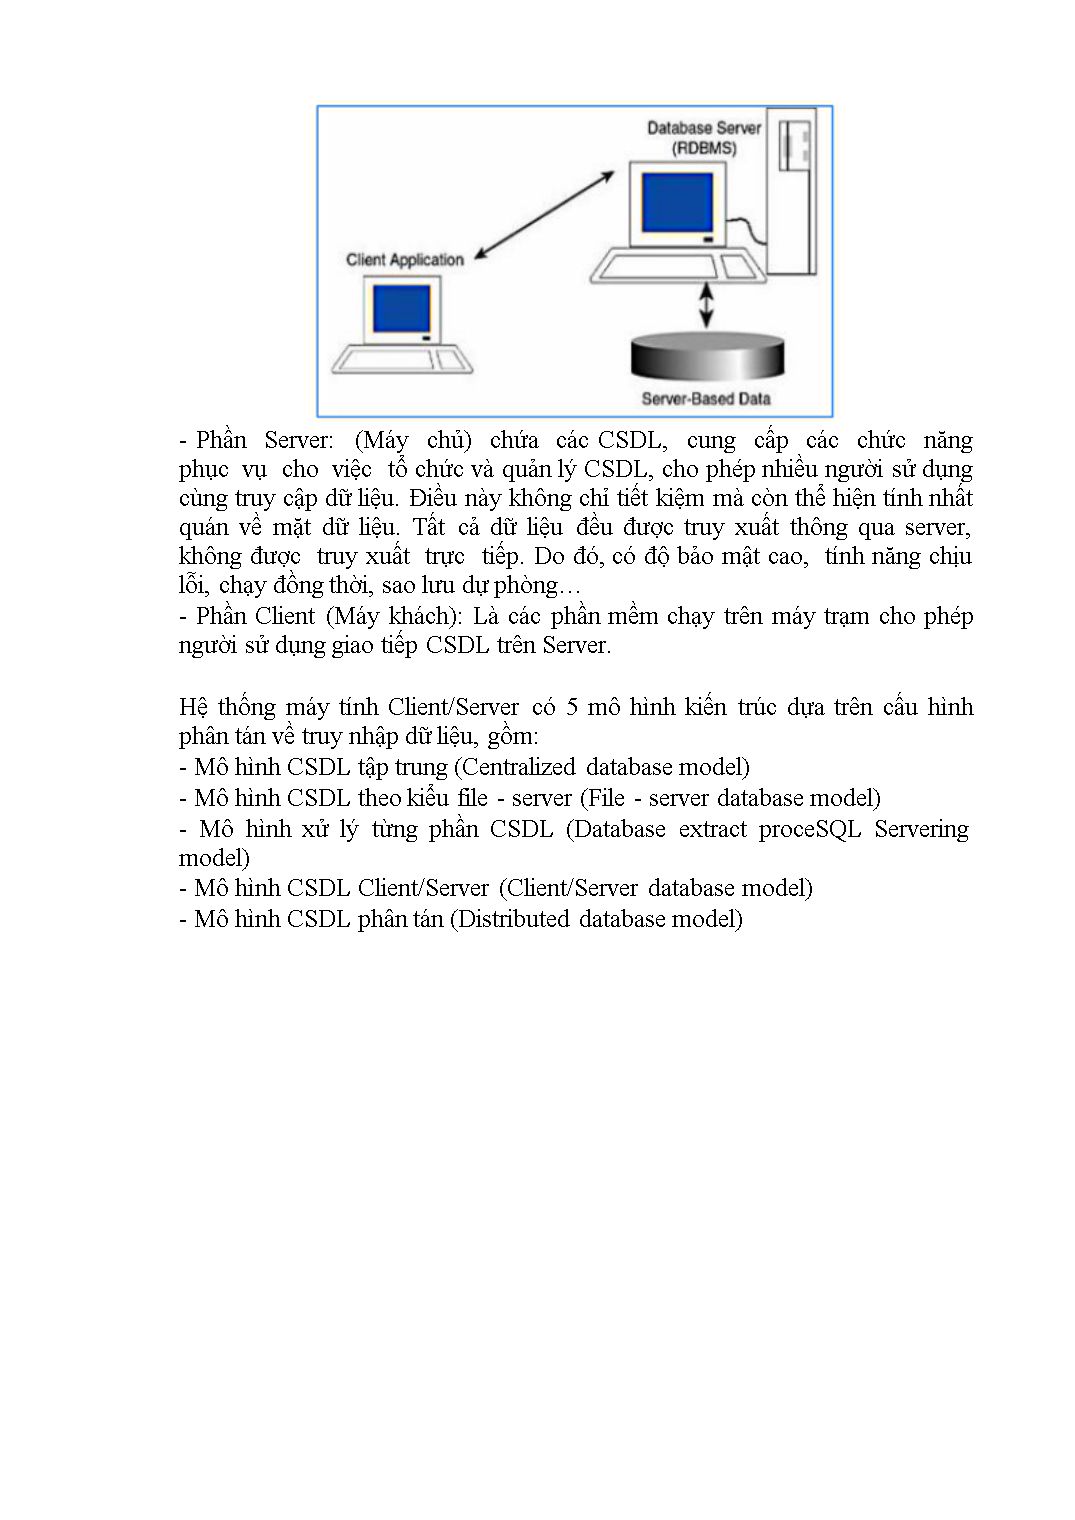 Giáo trình mô đun Hệ quản trị cơ sở dữ liệu - Nghề: Lập trình máy tính trang 7